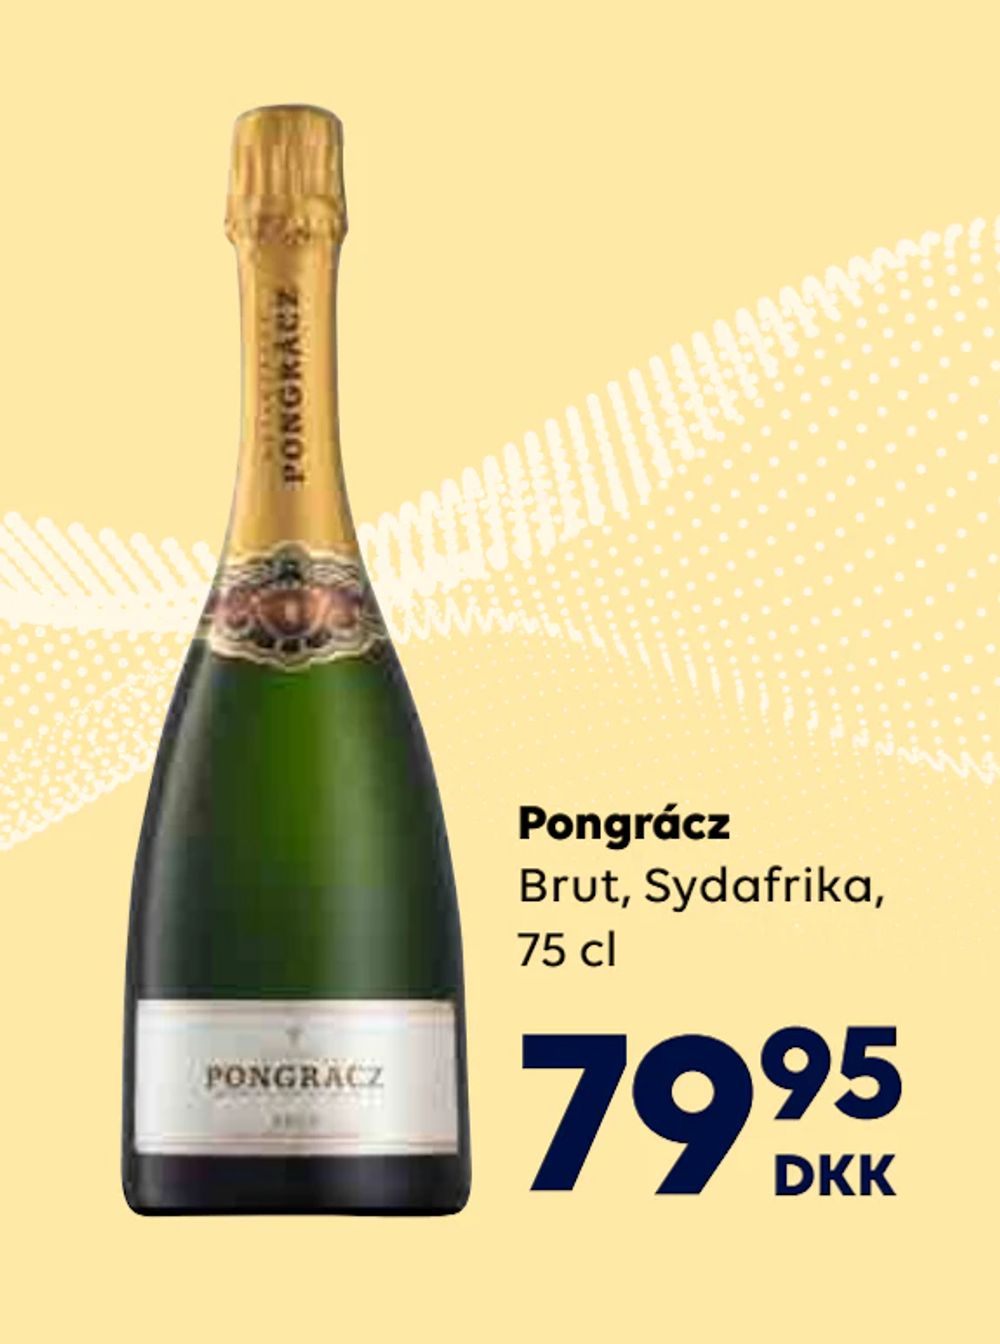 Tilbud på Pongrácz fra BorderShop til 79,95 kr.